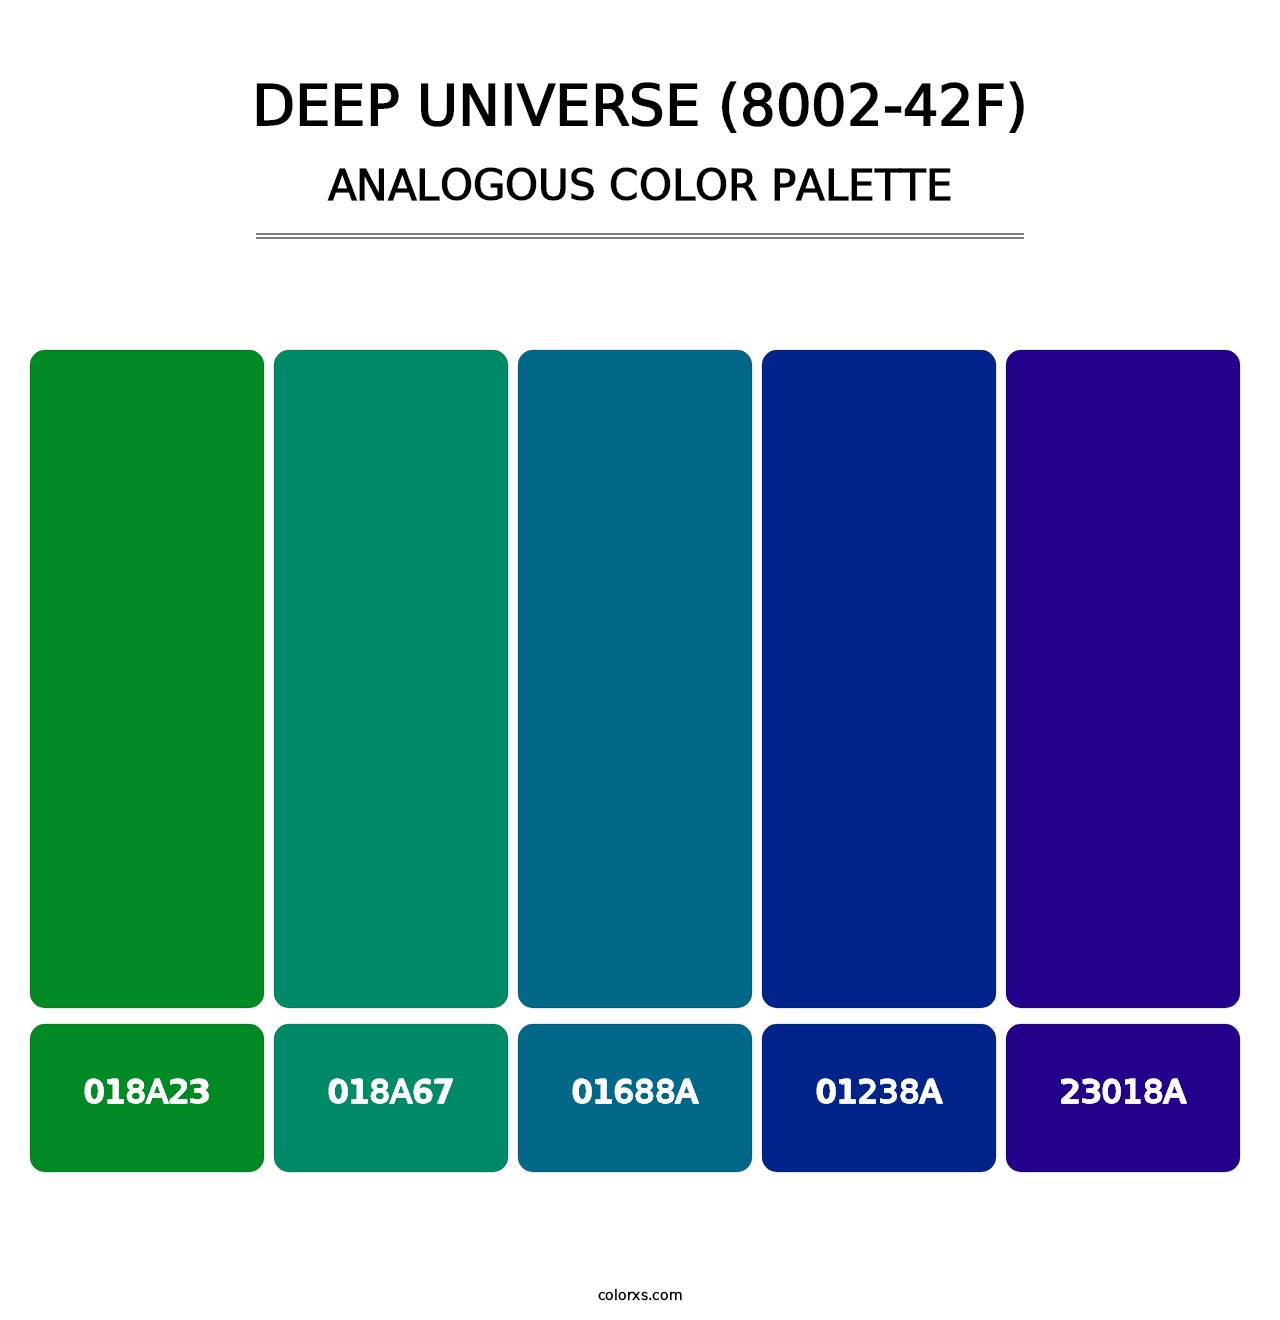 Deep Universe (8002-42F) - Analogous Color Palette